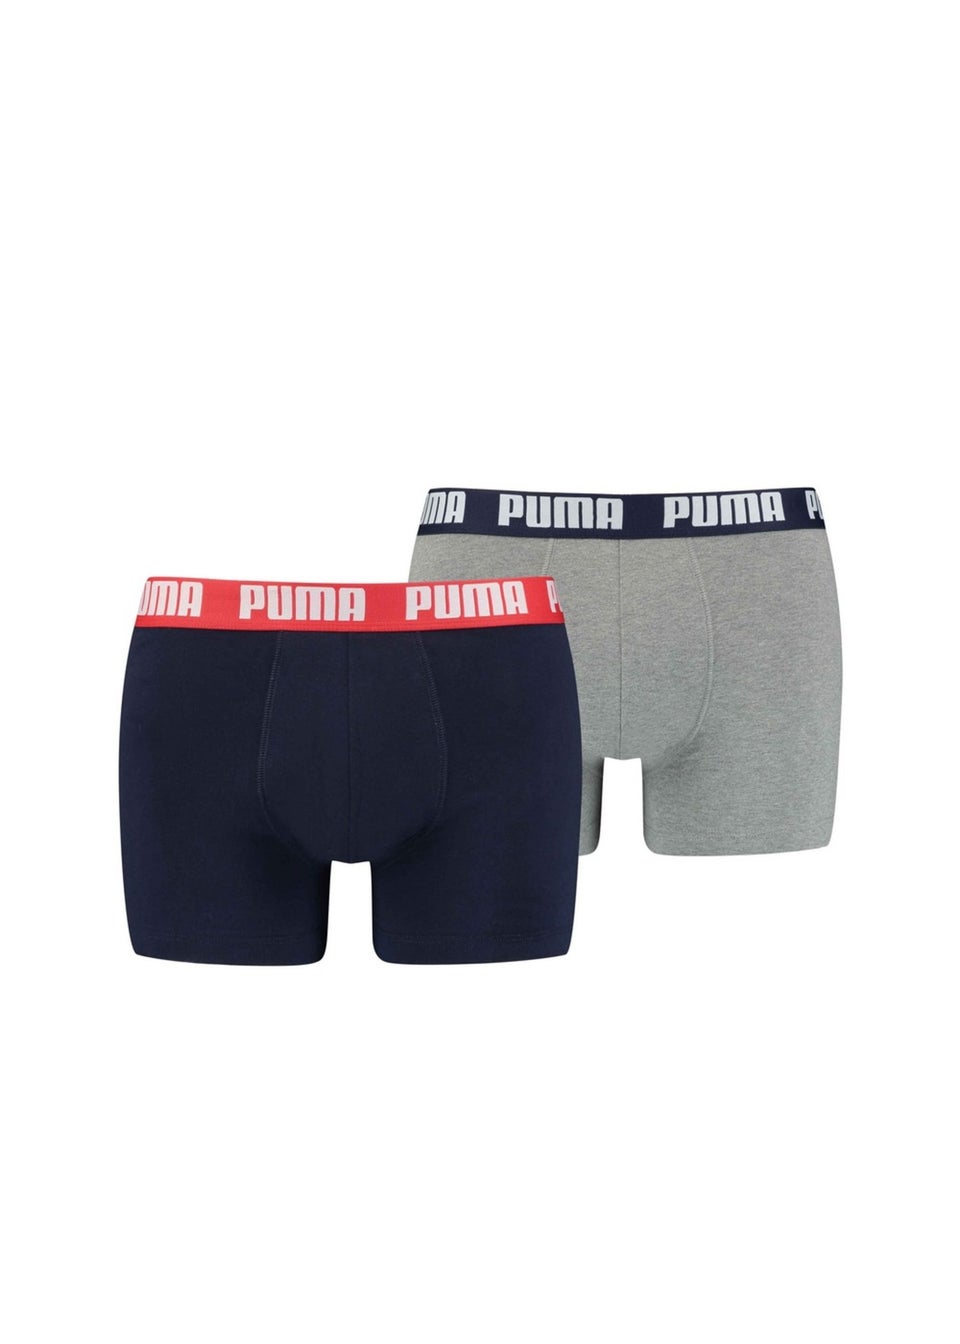 Puma Grey/Navy Basic Boxer Shorts (Pack of 2)